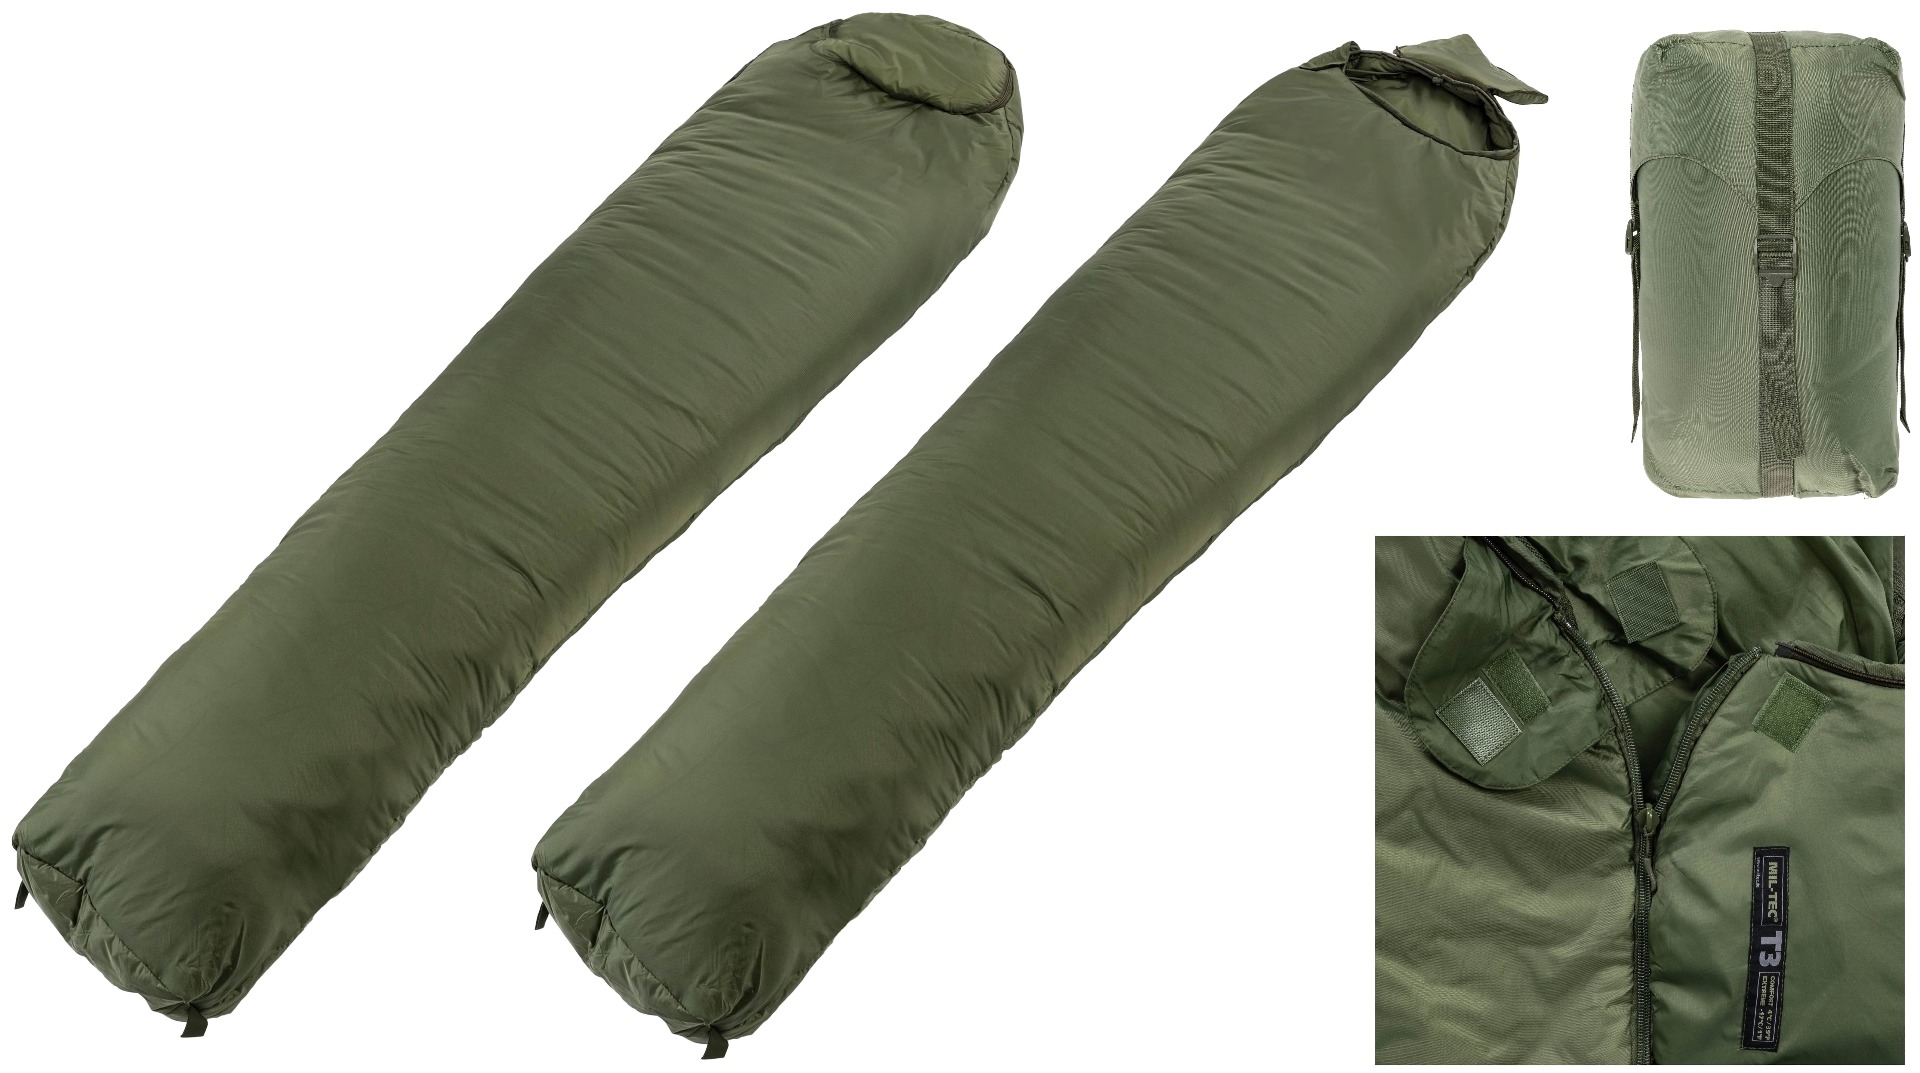 Pridobite si udobno in zanesljivo vojaško spalno vrečo Tactical 3 v olivni barvi. Vodoodporna, toplotno izolirana in vzdržljiva - idealna za vojaške enote, planince in avanturiste. Zagotovite si svojo danes!